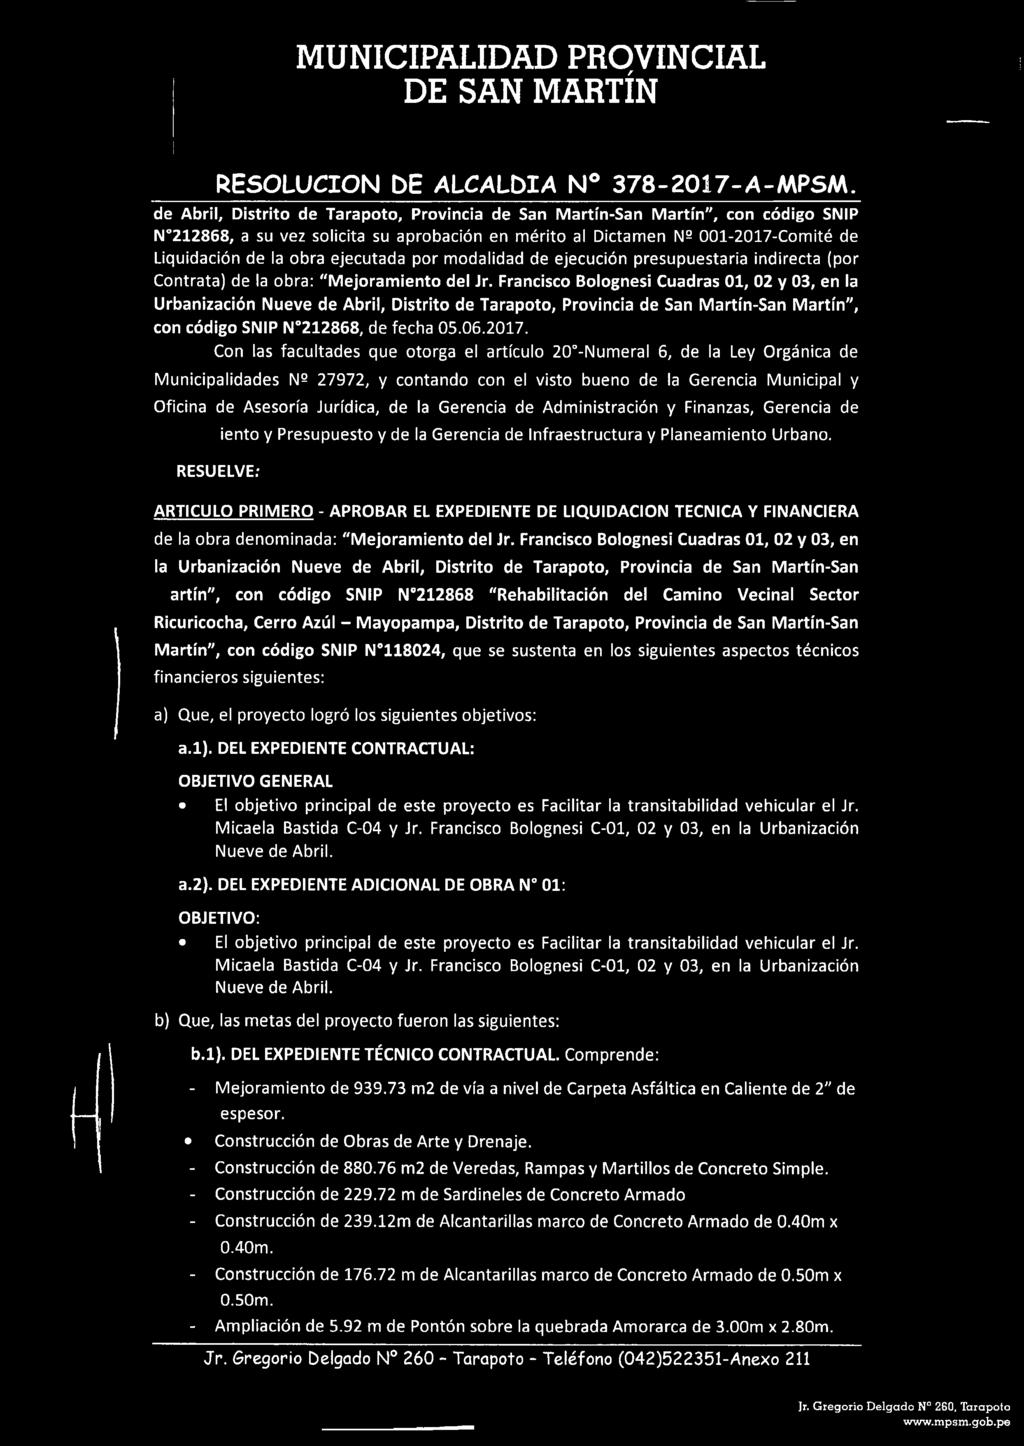 Francisco Bolognesi Cuadras 01, 02 y 03, en la Urbanización Nueve de Abril, Distrito de Tarapoto, Provincia de